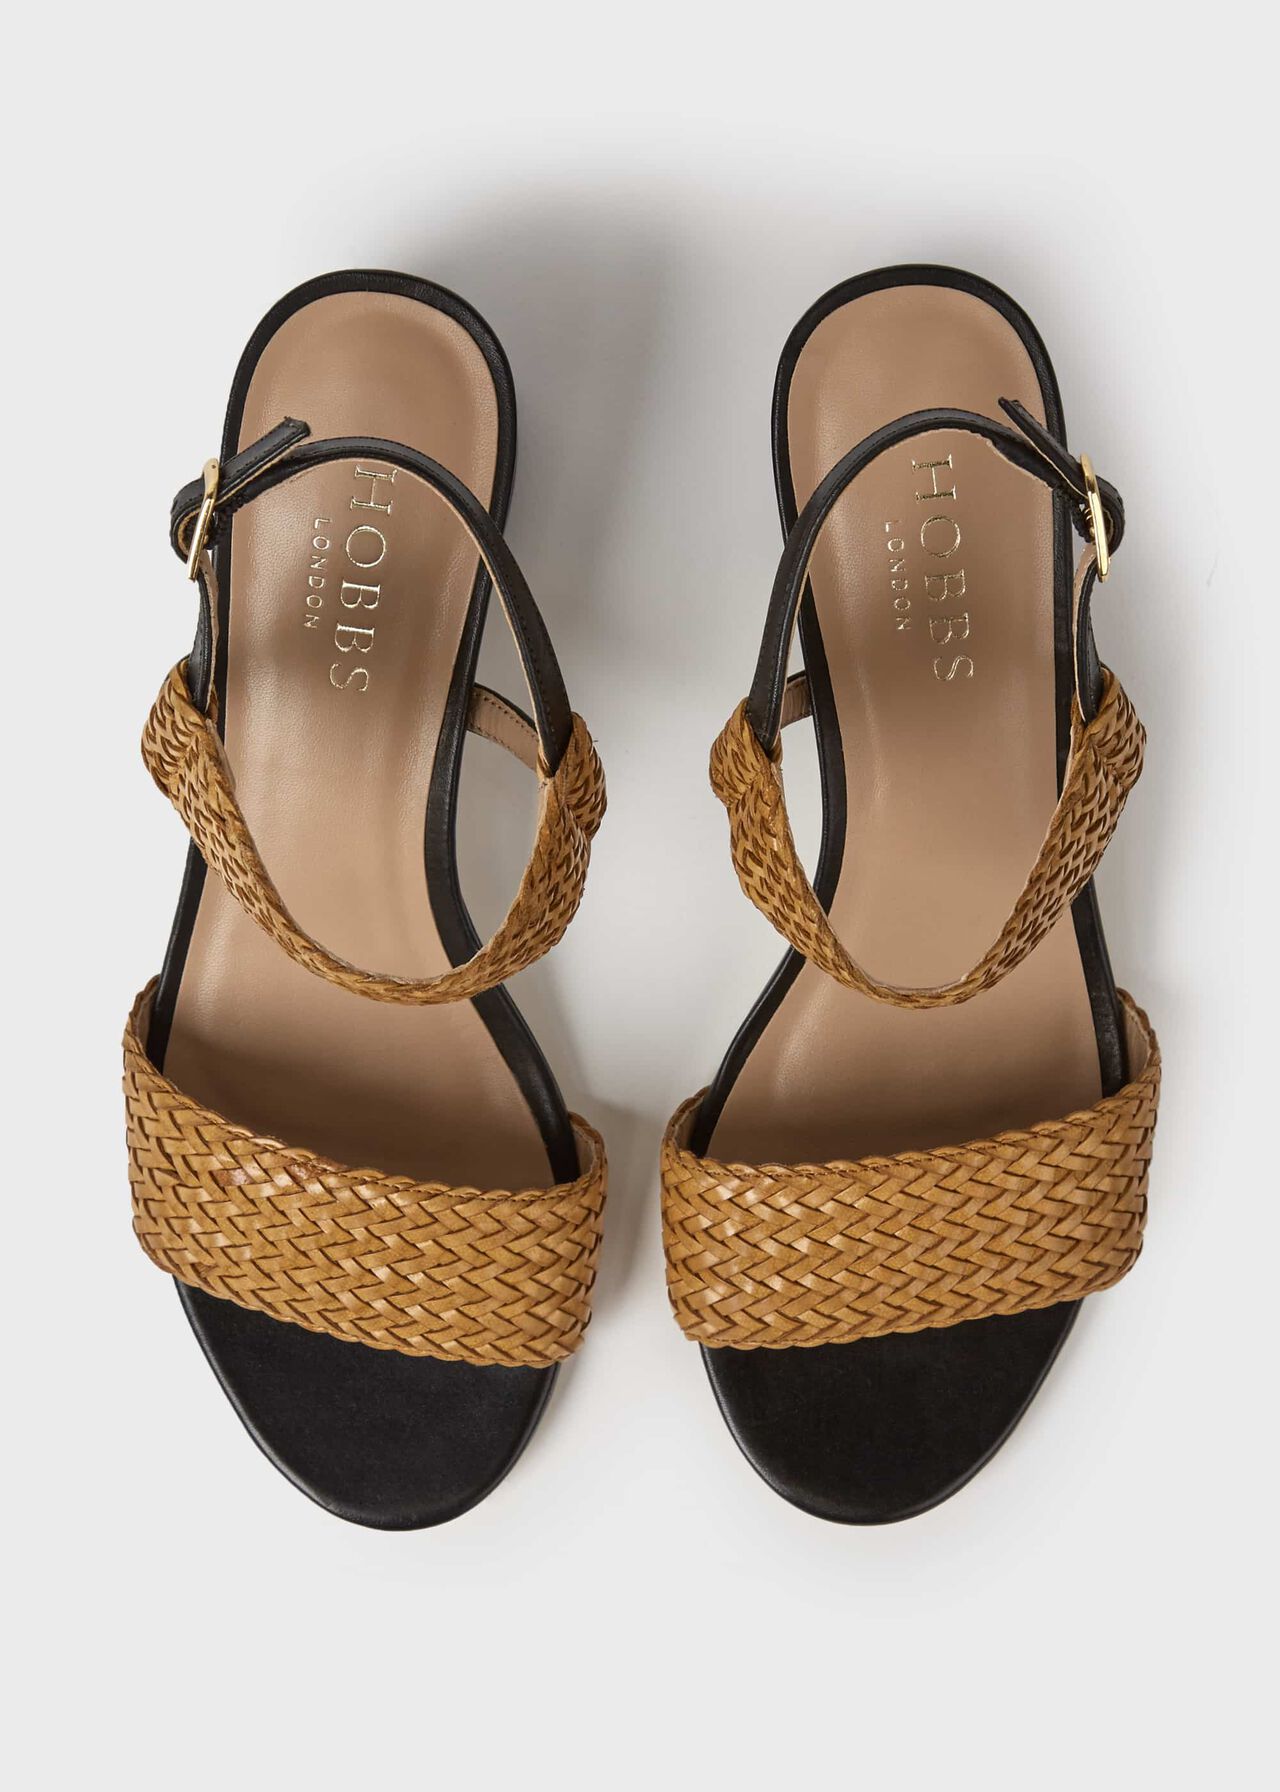 Lois Leather Sandals, Tan, hi-res